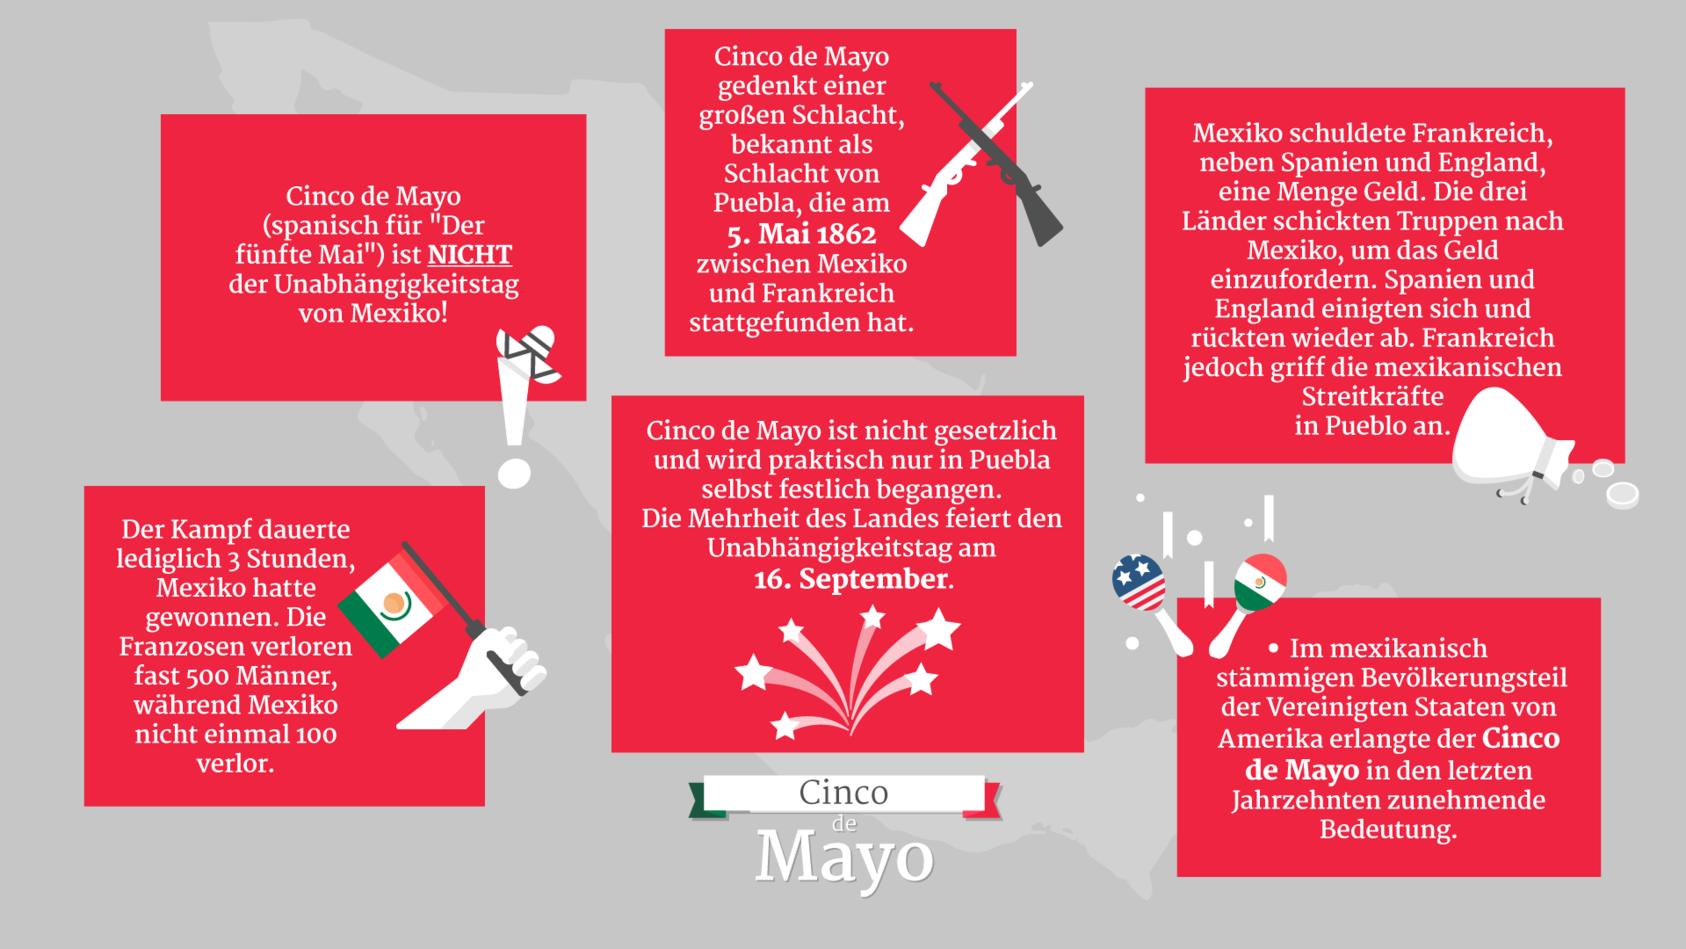 Alle wichtigen Infos über den "Cinco de Mayo" auf einen Blick!